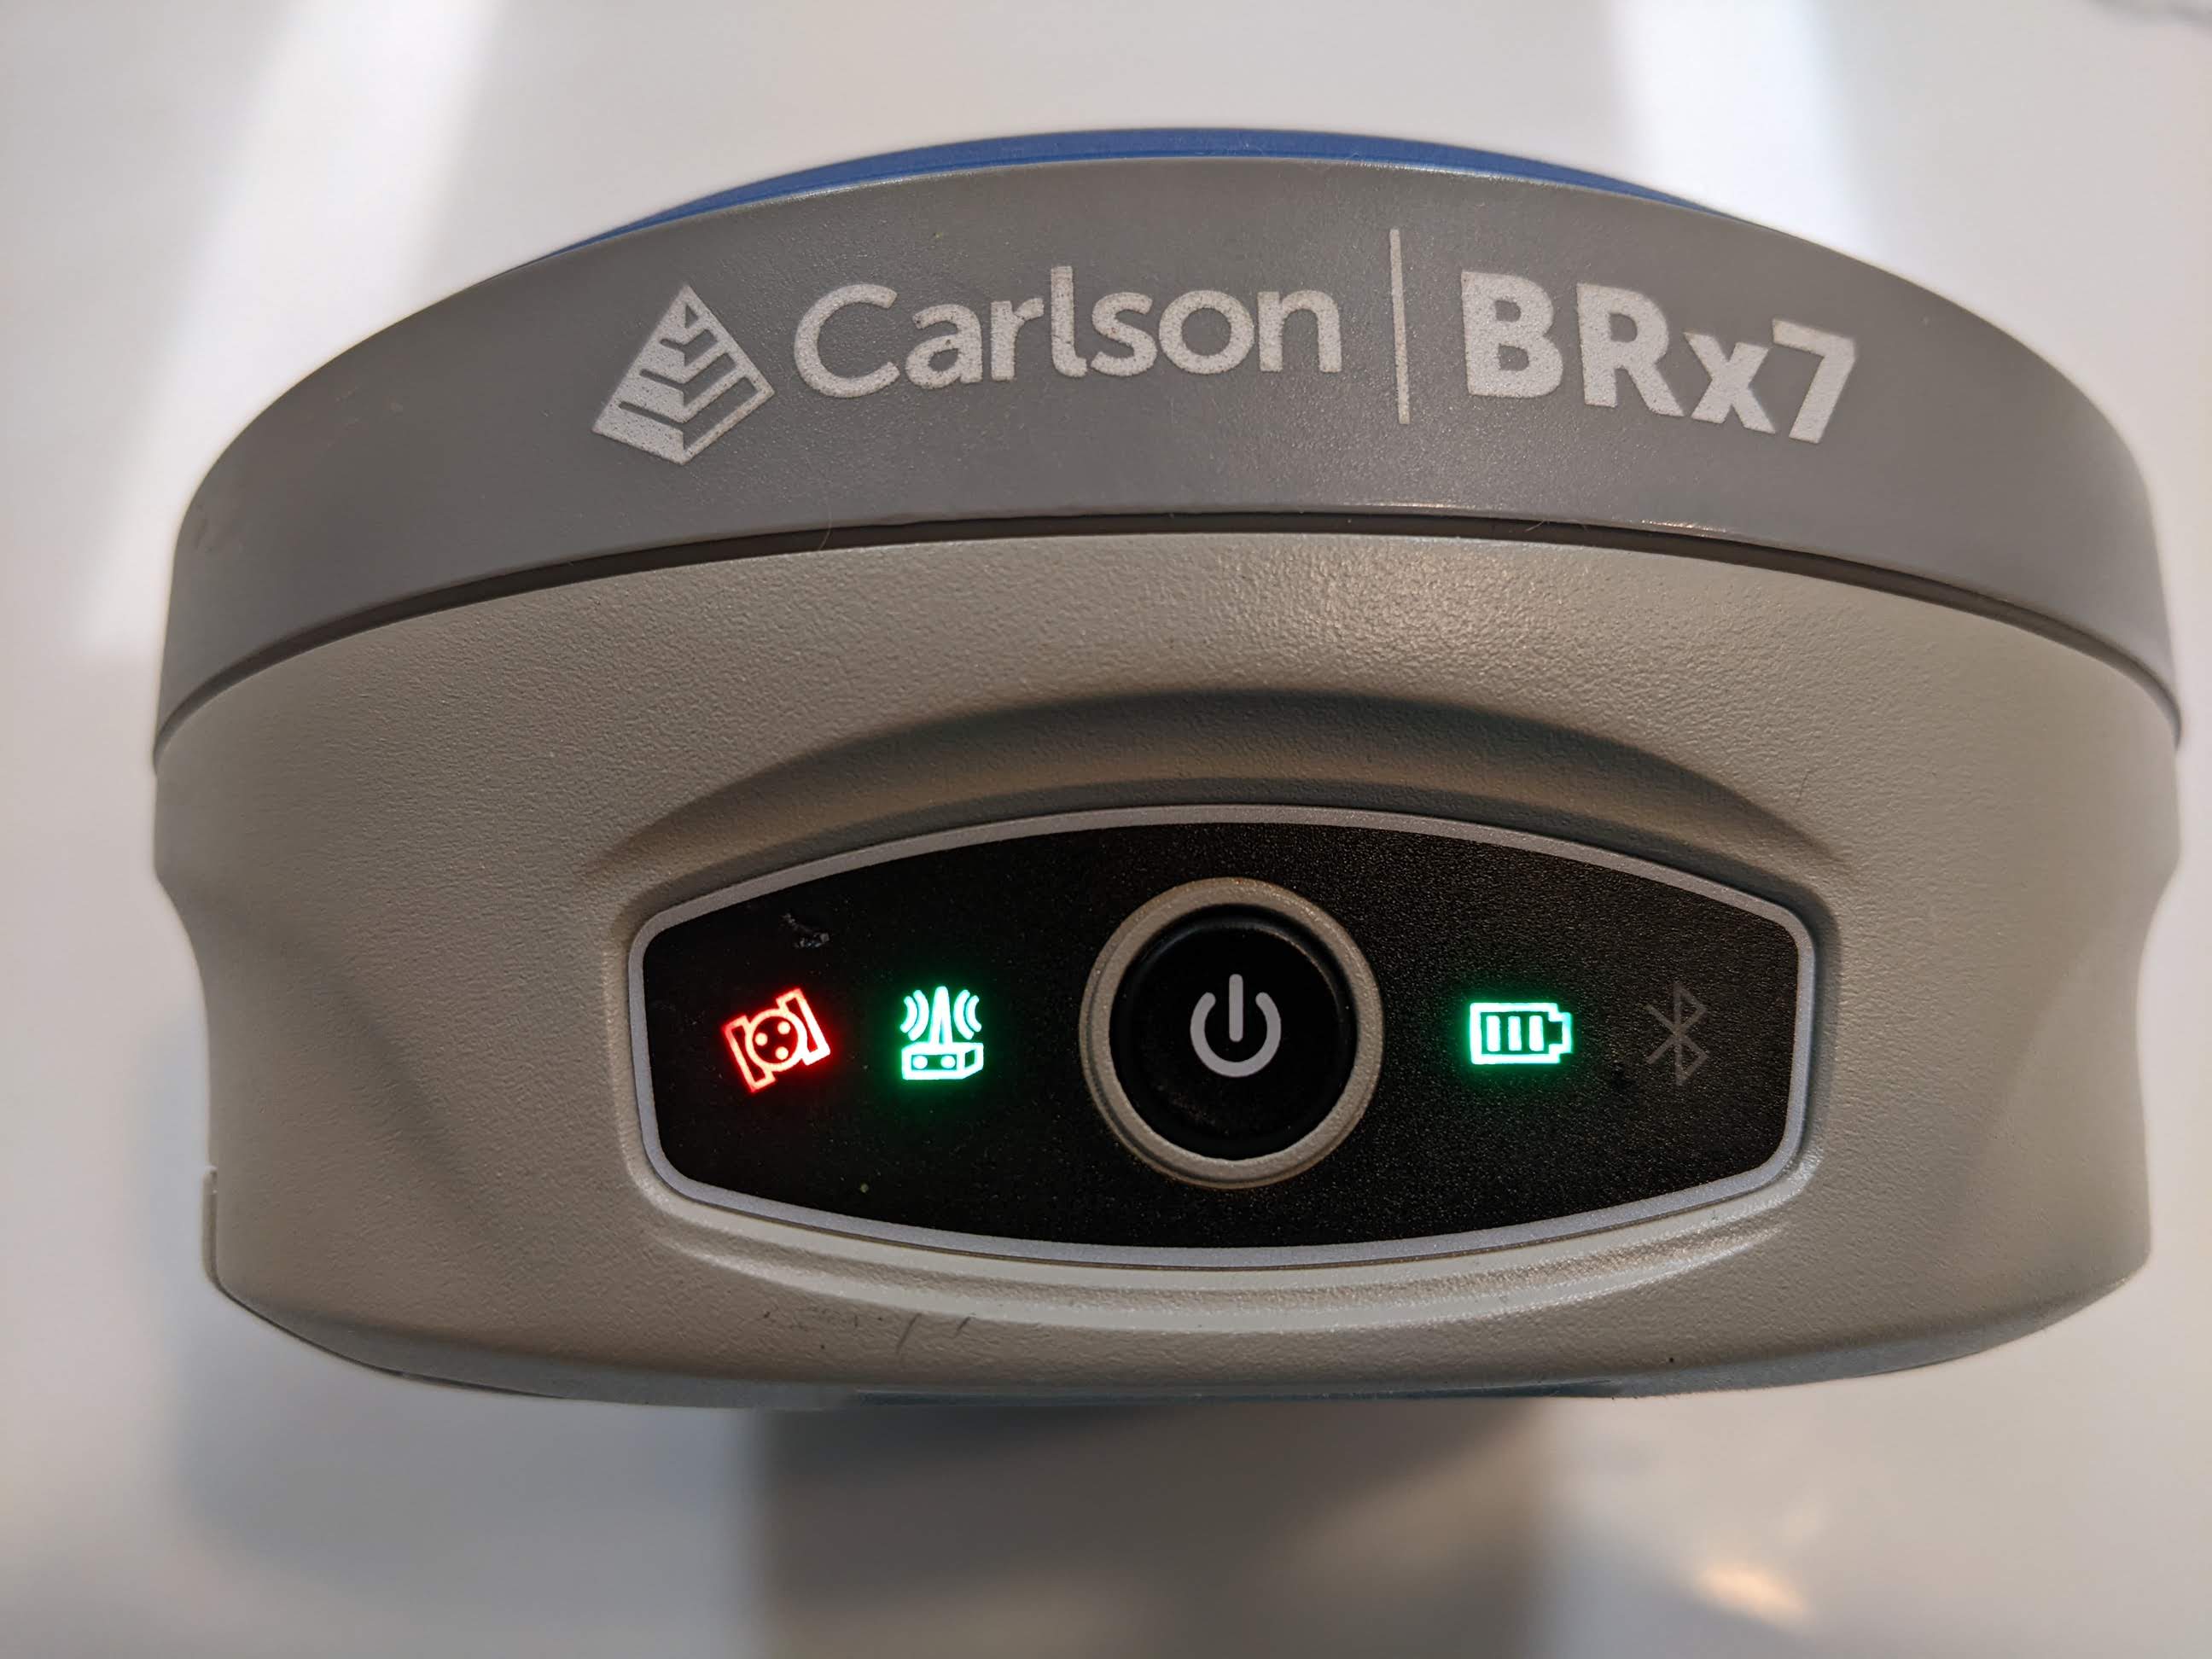 BRx7 Modem LED blinks when communicating